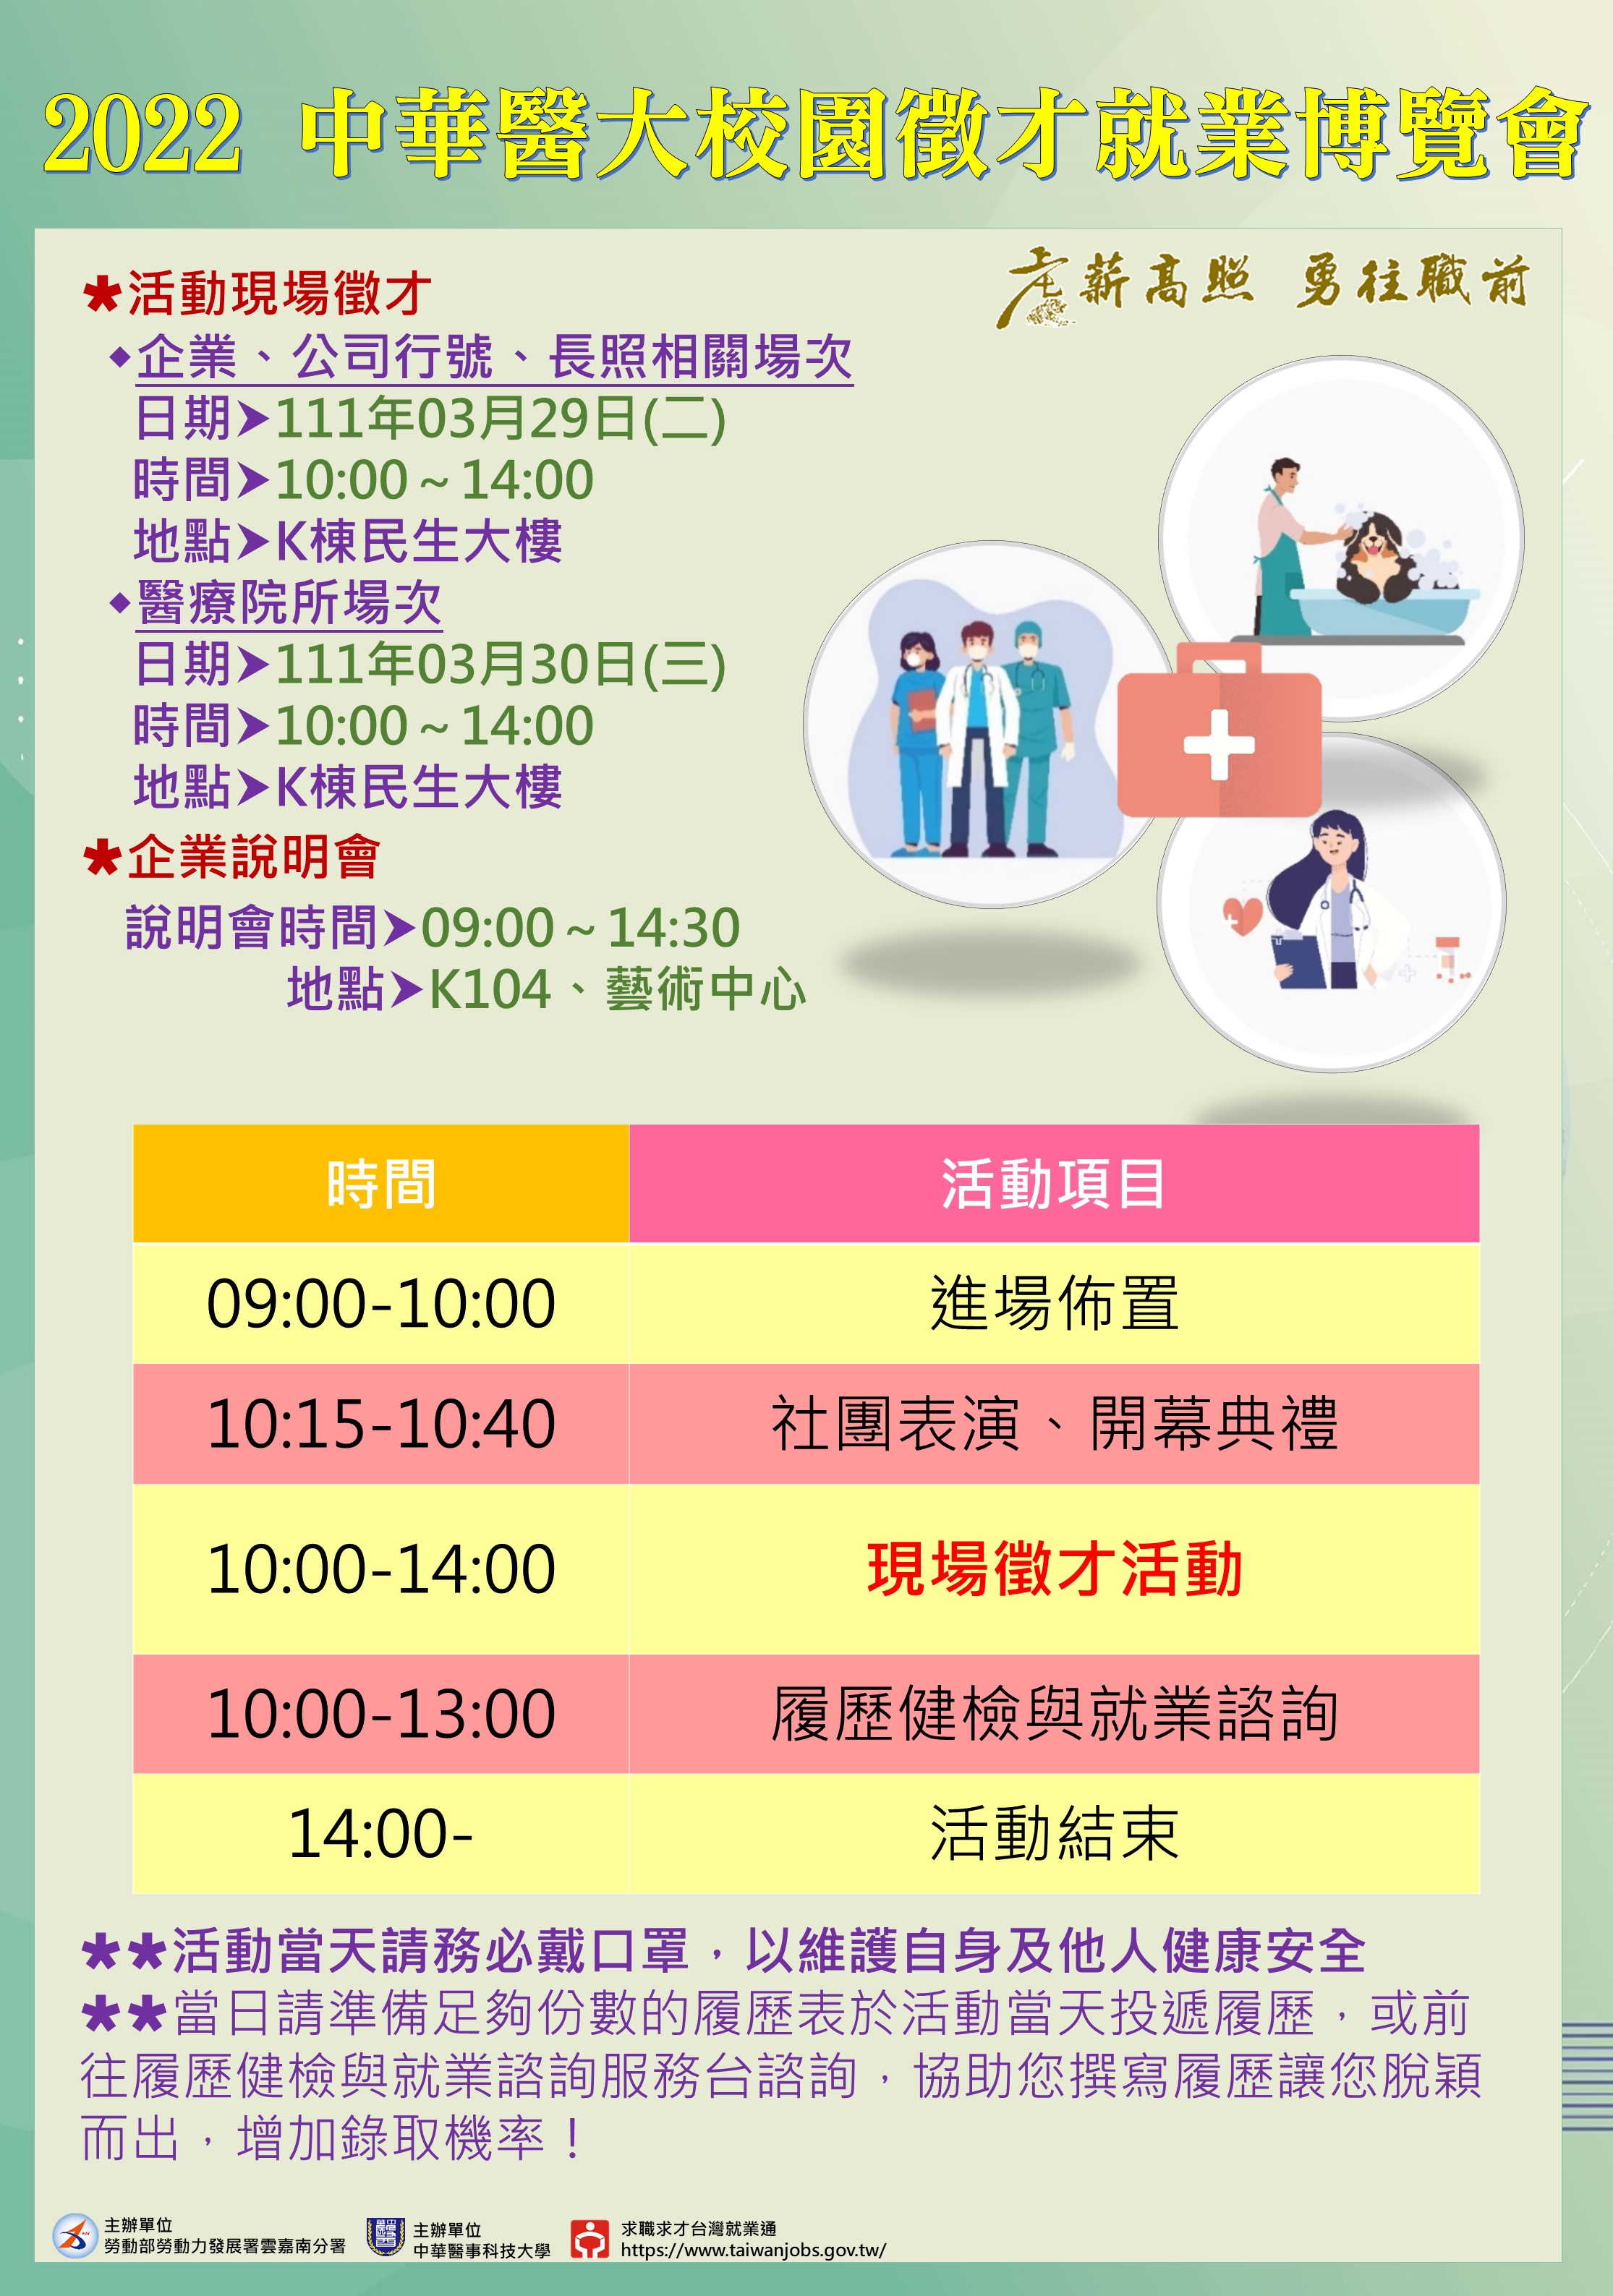 中華醫事科技大學就業博覽會